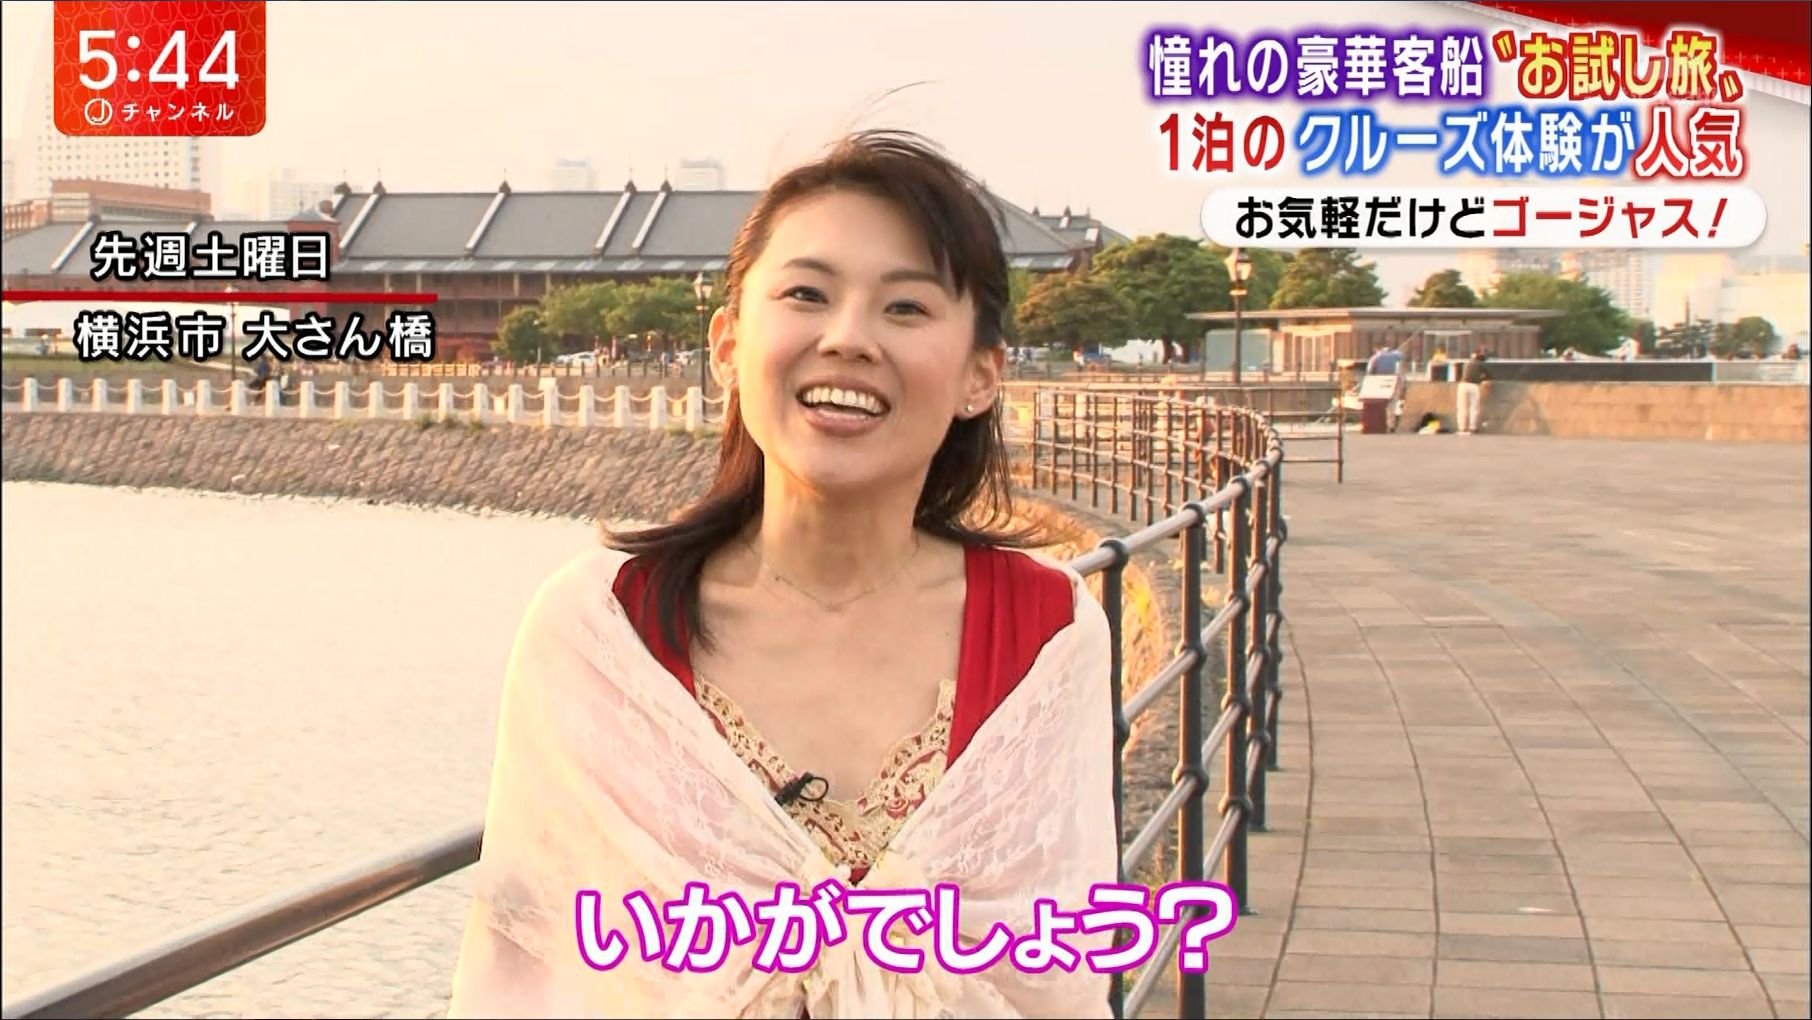 米田やすみ スーパーjチャンネル 17 05 02 女子アナキャプでも貼っておく Optimistic Attraction